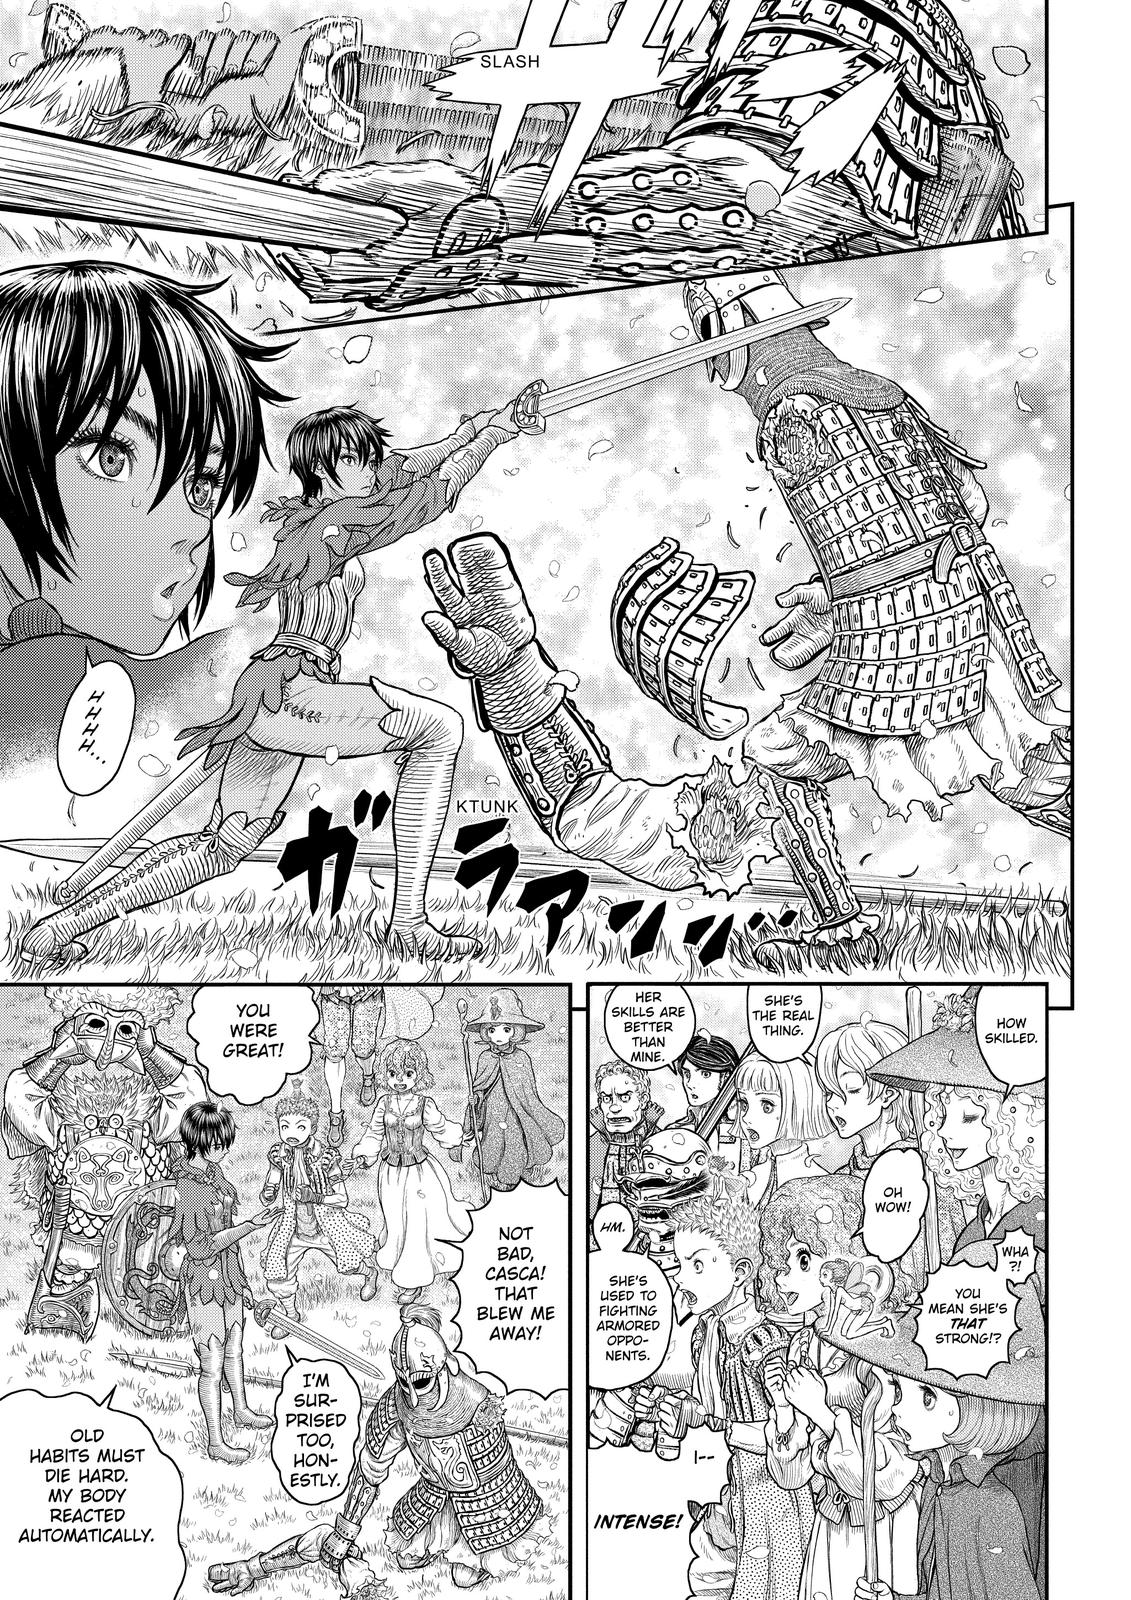 Berserk Manga Chapter 359 image 11